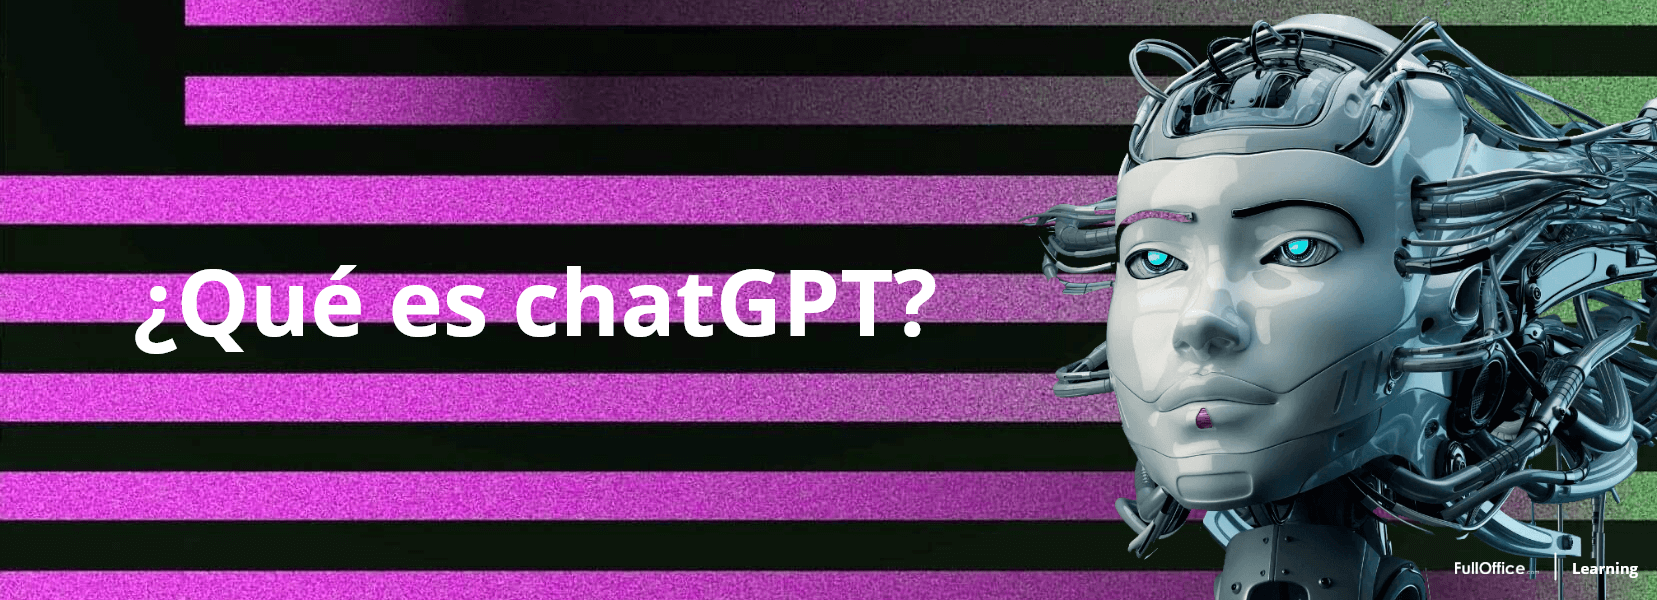 ¿Qué es ChatGPT y cómo funciona?